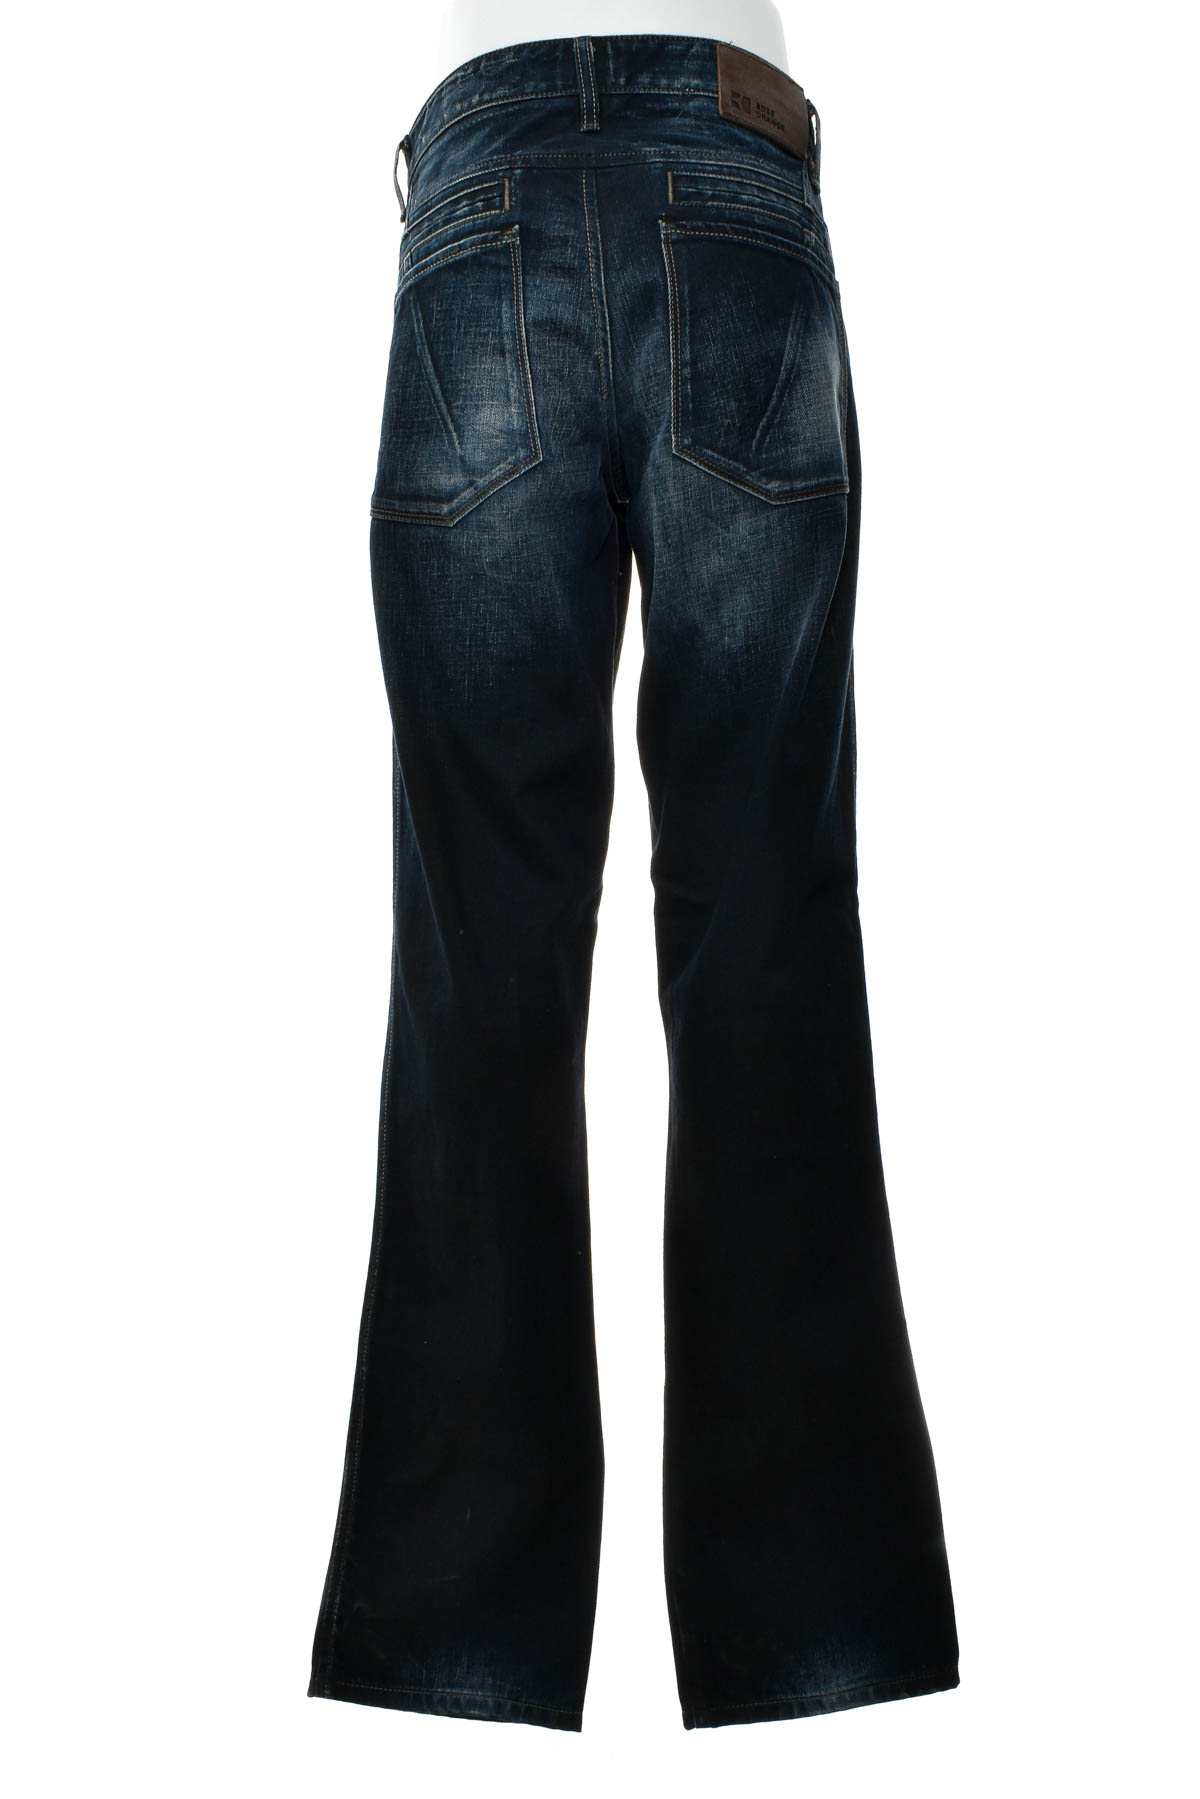 Jeans pentru bărbăți - Boss Orange - 1